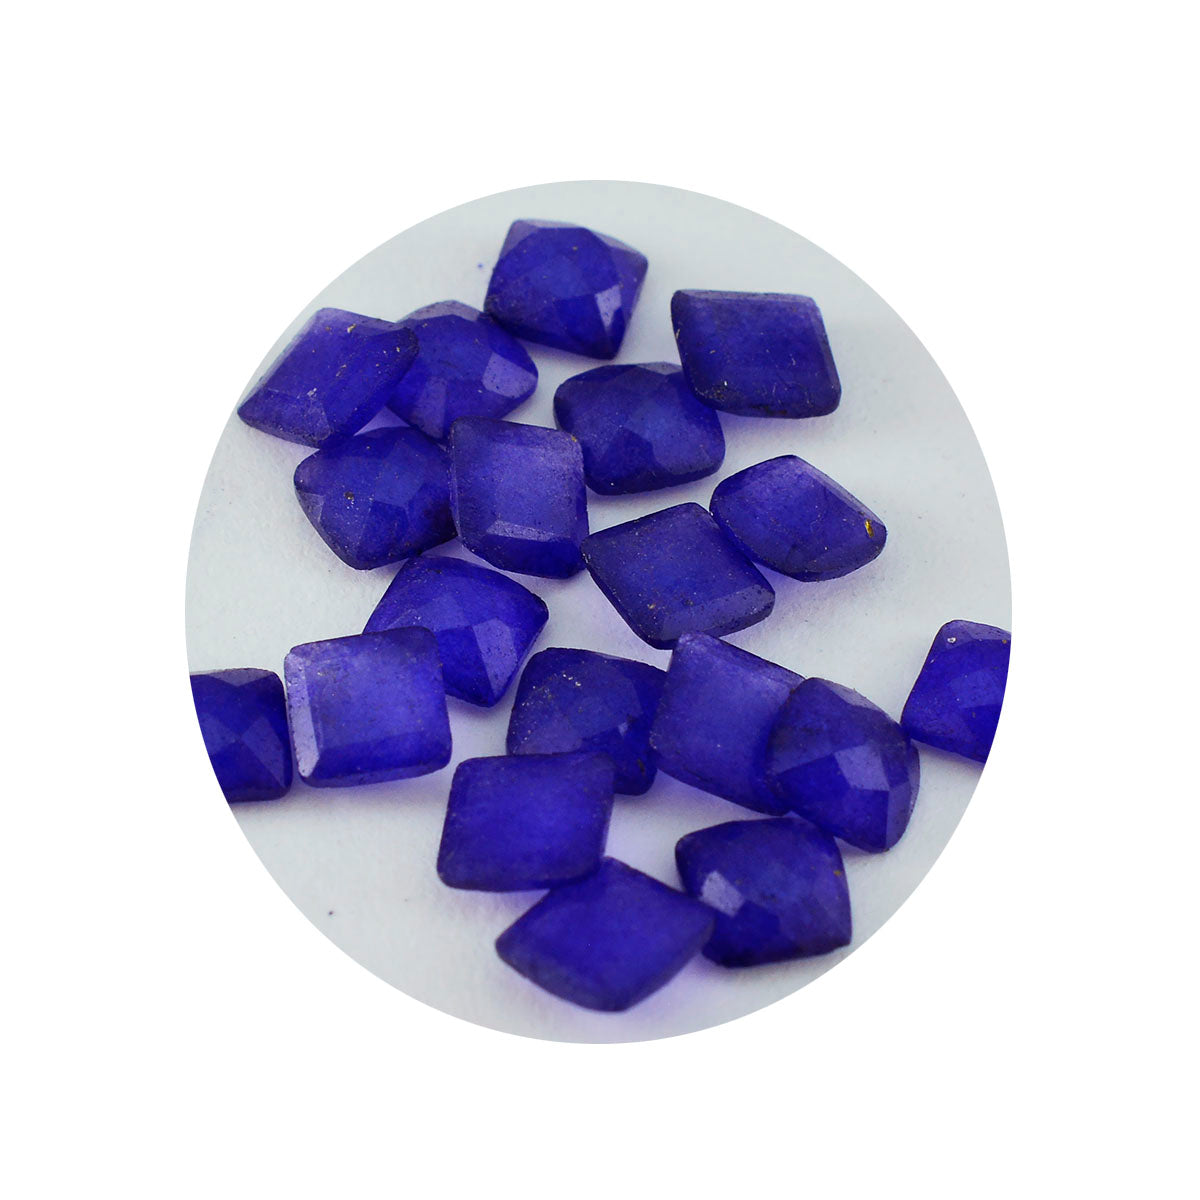 riyogems 1 шт. натуральный синий яшма ограненный 4x4 мм квадратной формы драгоценный камень хорошего качества